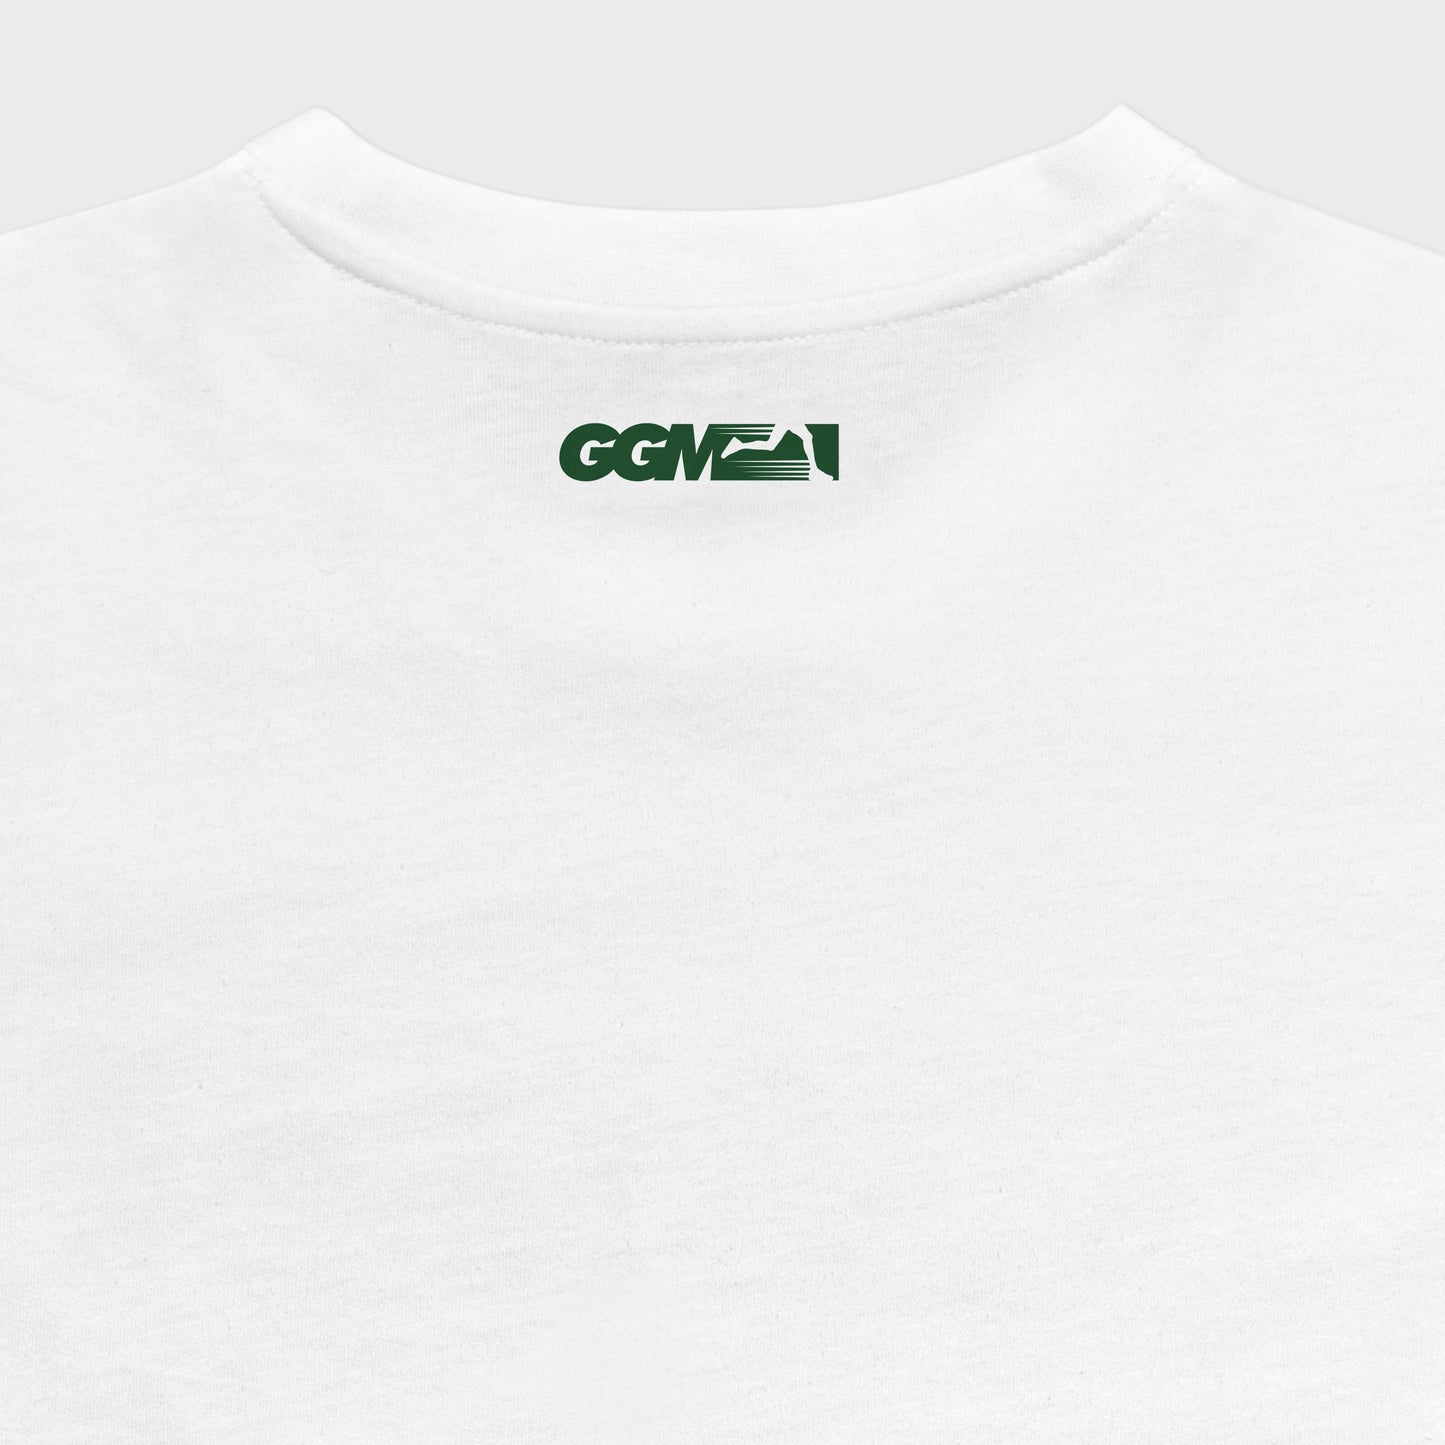 GGM Classic T-Shirt - White/Money Green